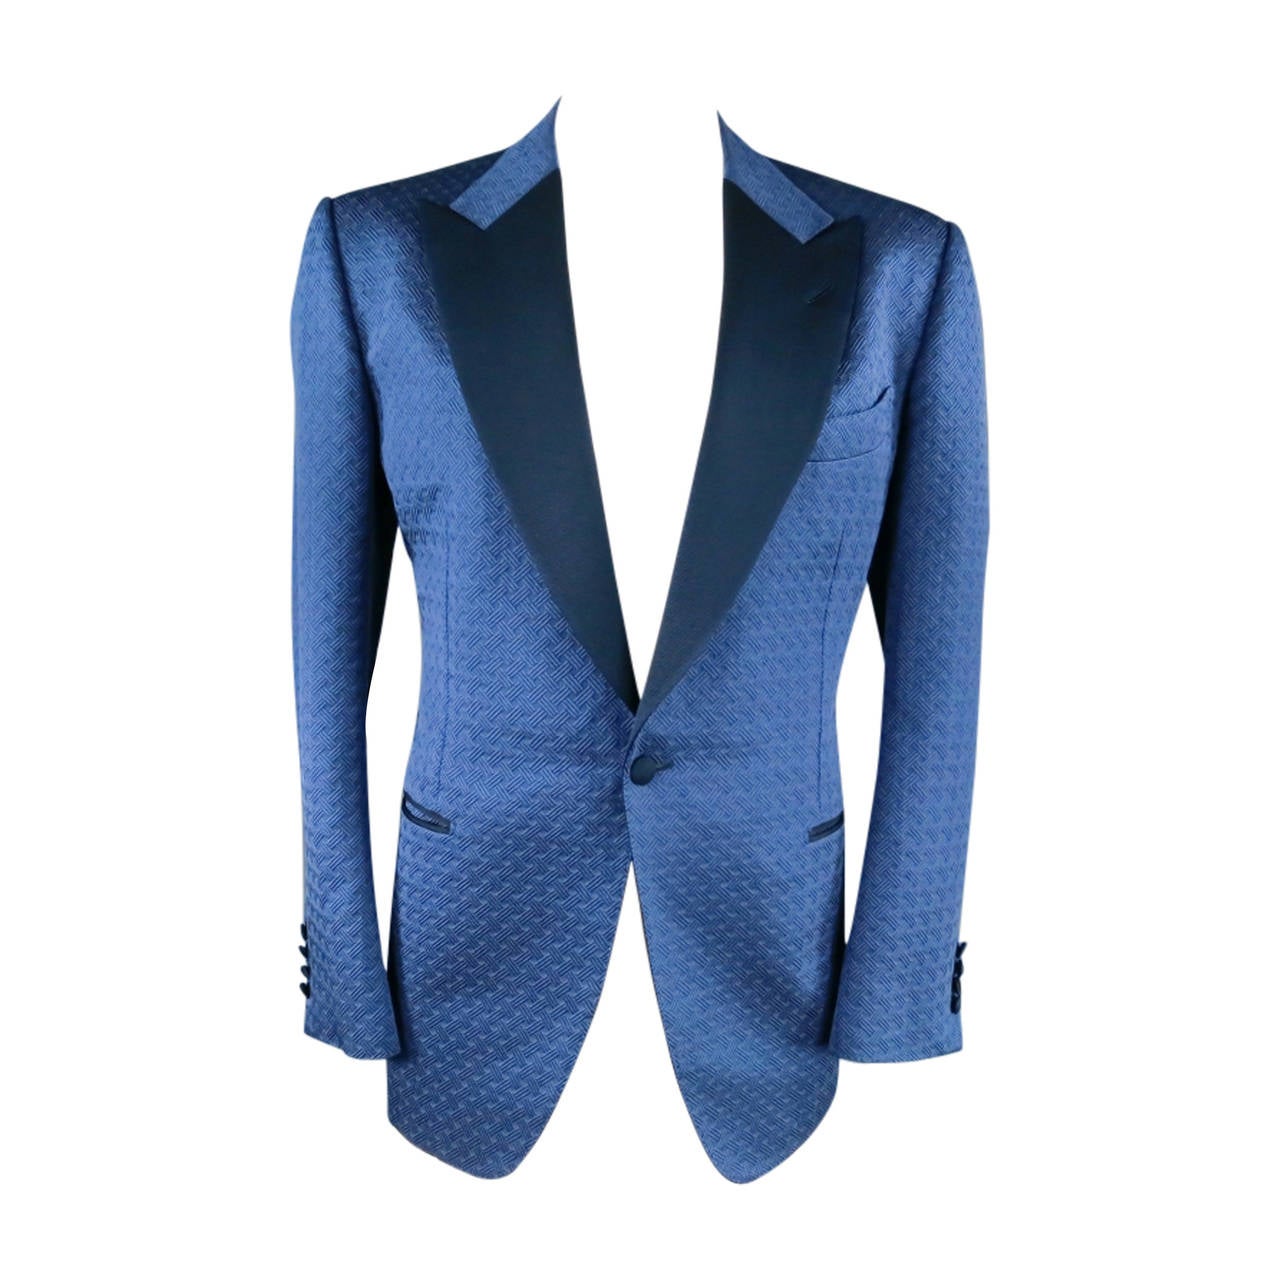 TOM FORD 44 R Navy Blue Woven Textured Print Sport Coat Dinner Tuxedo ...